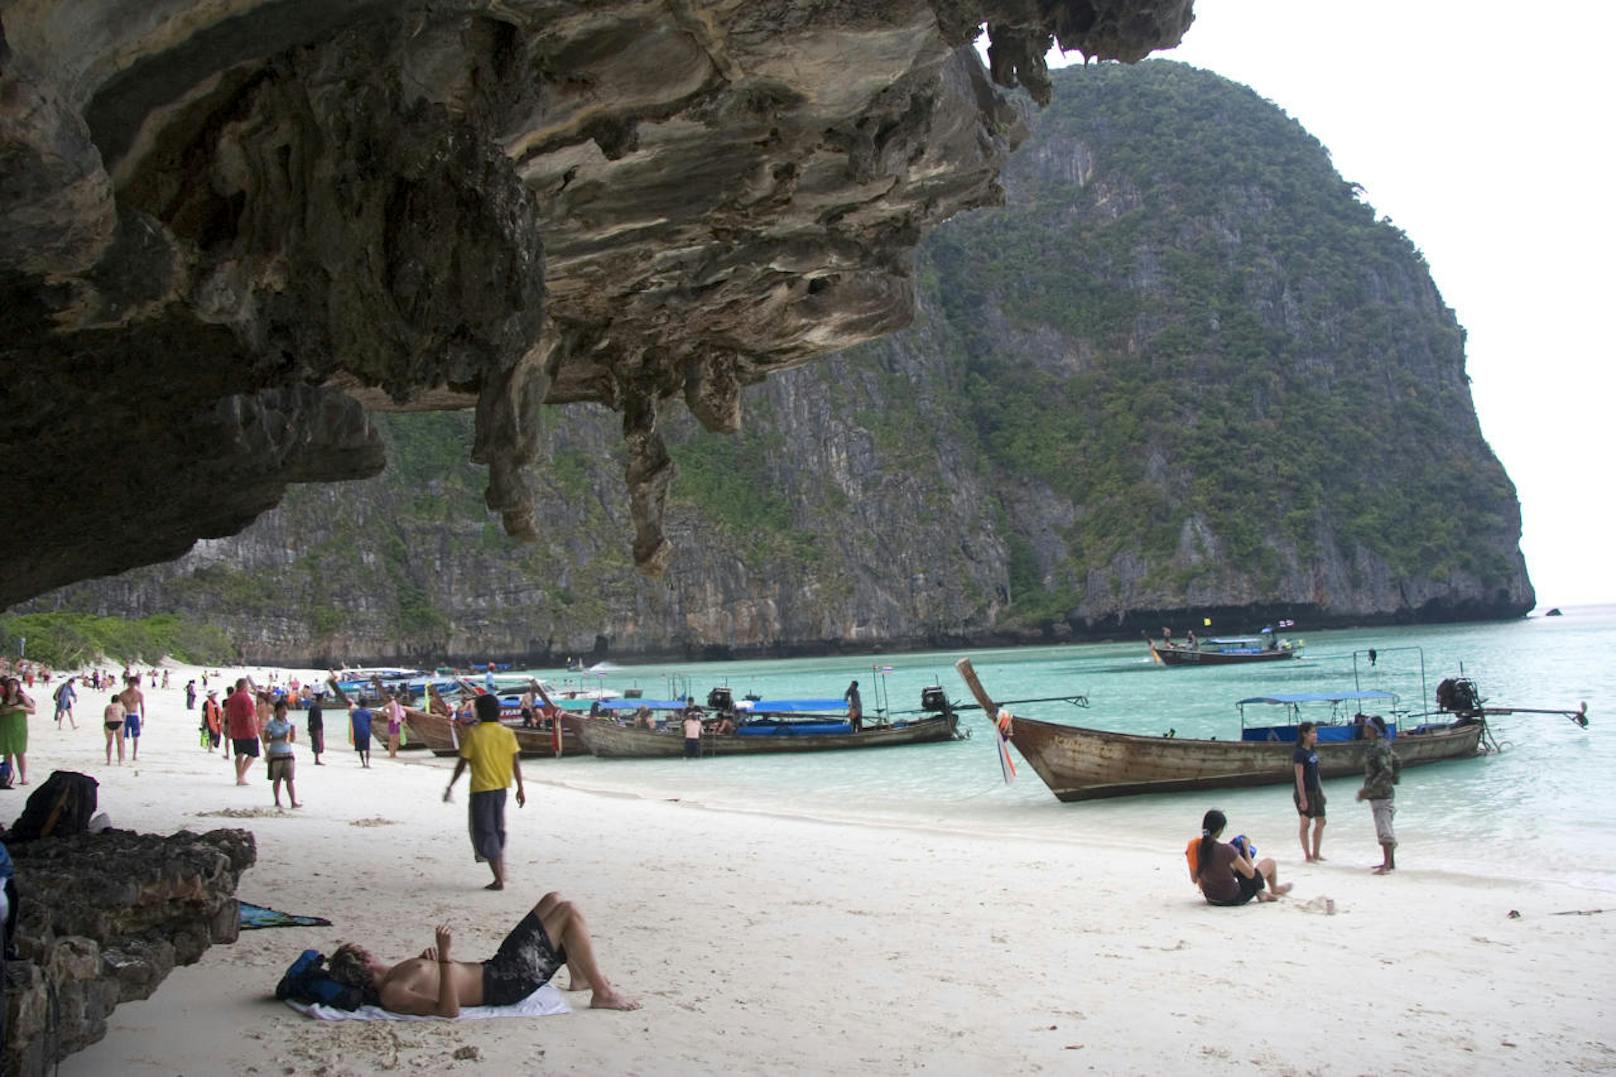 Maya Bay auf der thailändischen Insel Phi Phi wurde als Drehort für den Film "The Beach" mit Leonardo di Caprio weltberühmt. Weil der Strand seitdem von Urlaubern überlaufen ist, zog die thailändische Regierung die Notbremse und sperrt den Strand für vier Monate im Jahr, um weitere Umweltschäden zu verhindern.